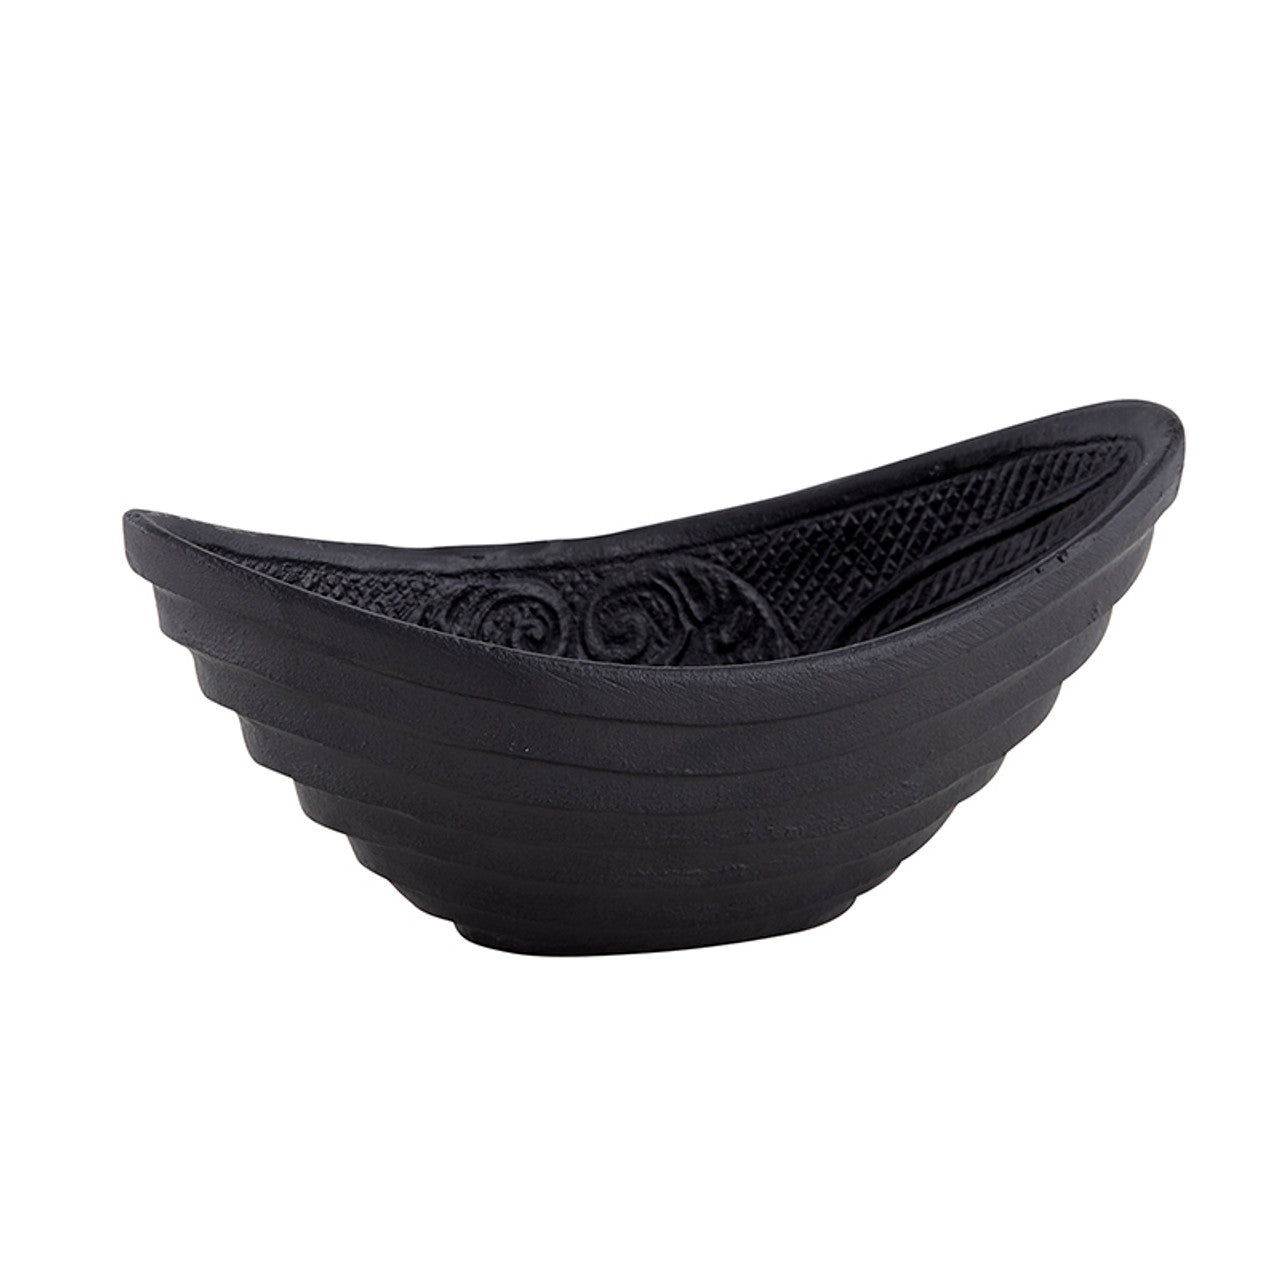 Gothic Cast Iron Oval Bowl | Black Versatile Serving Bowl | 6.5" x 3" x 2.75"